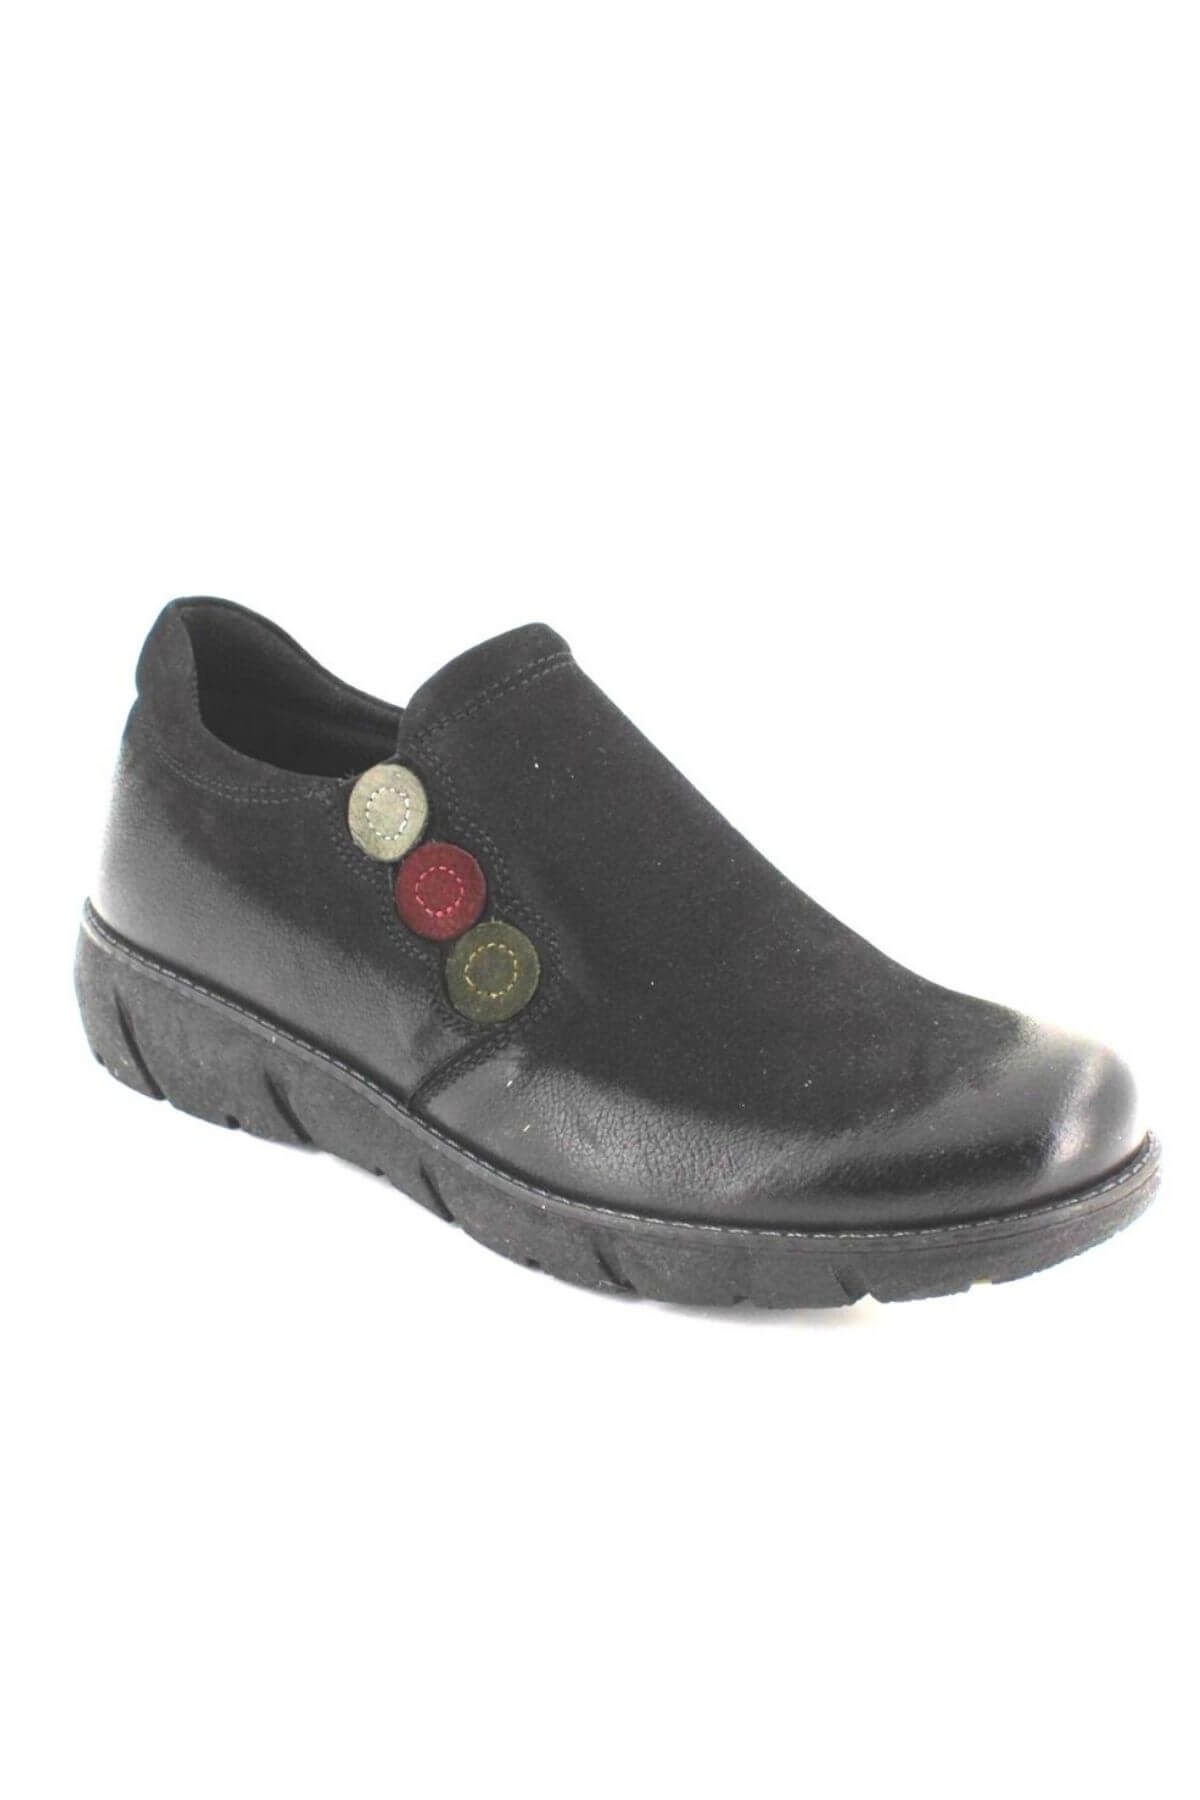 Kadın Casual Nubuk Deri Siyah Ayakkabı 1953714K